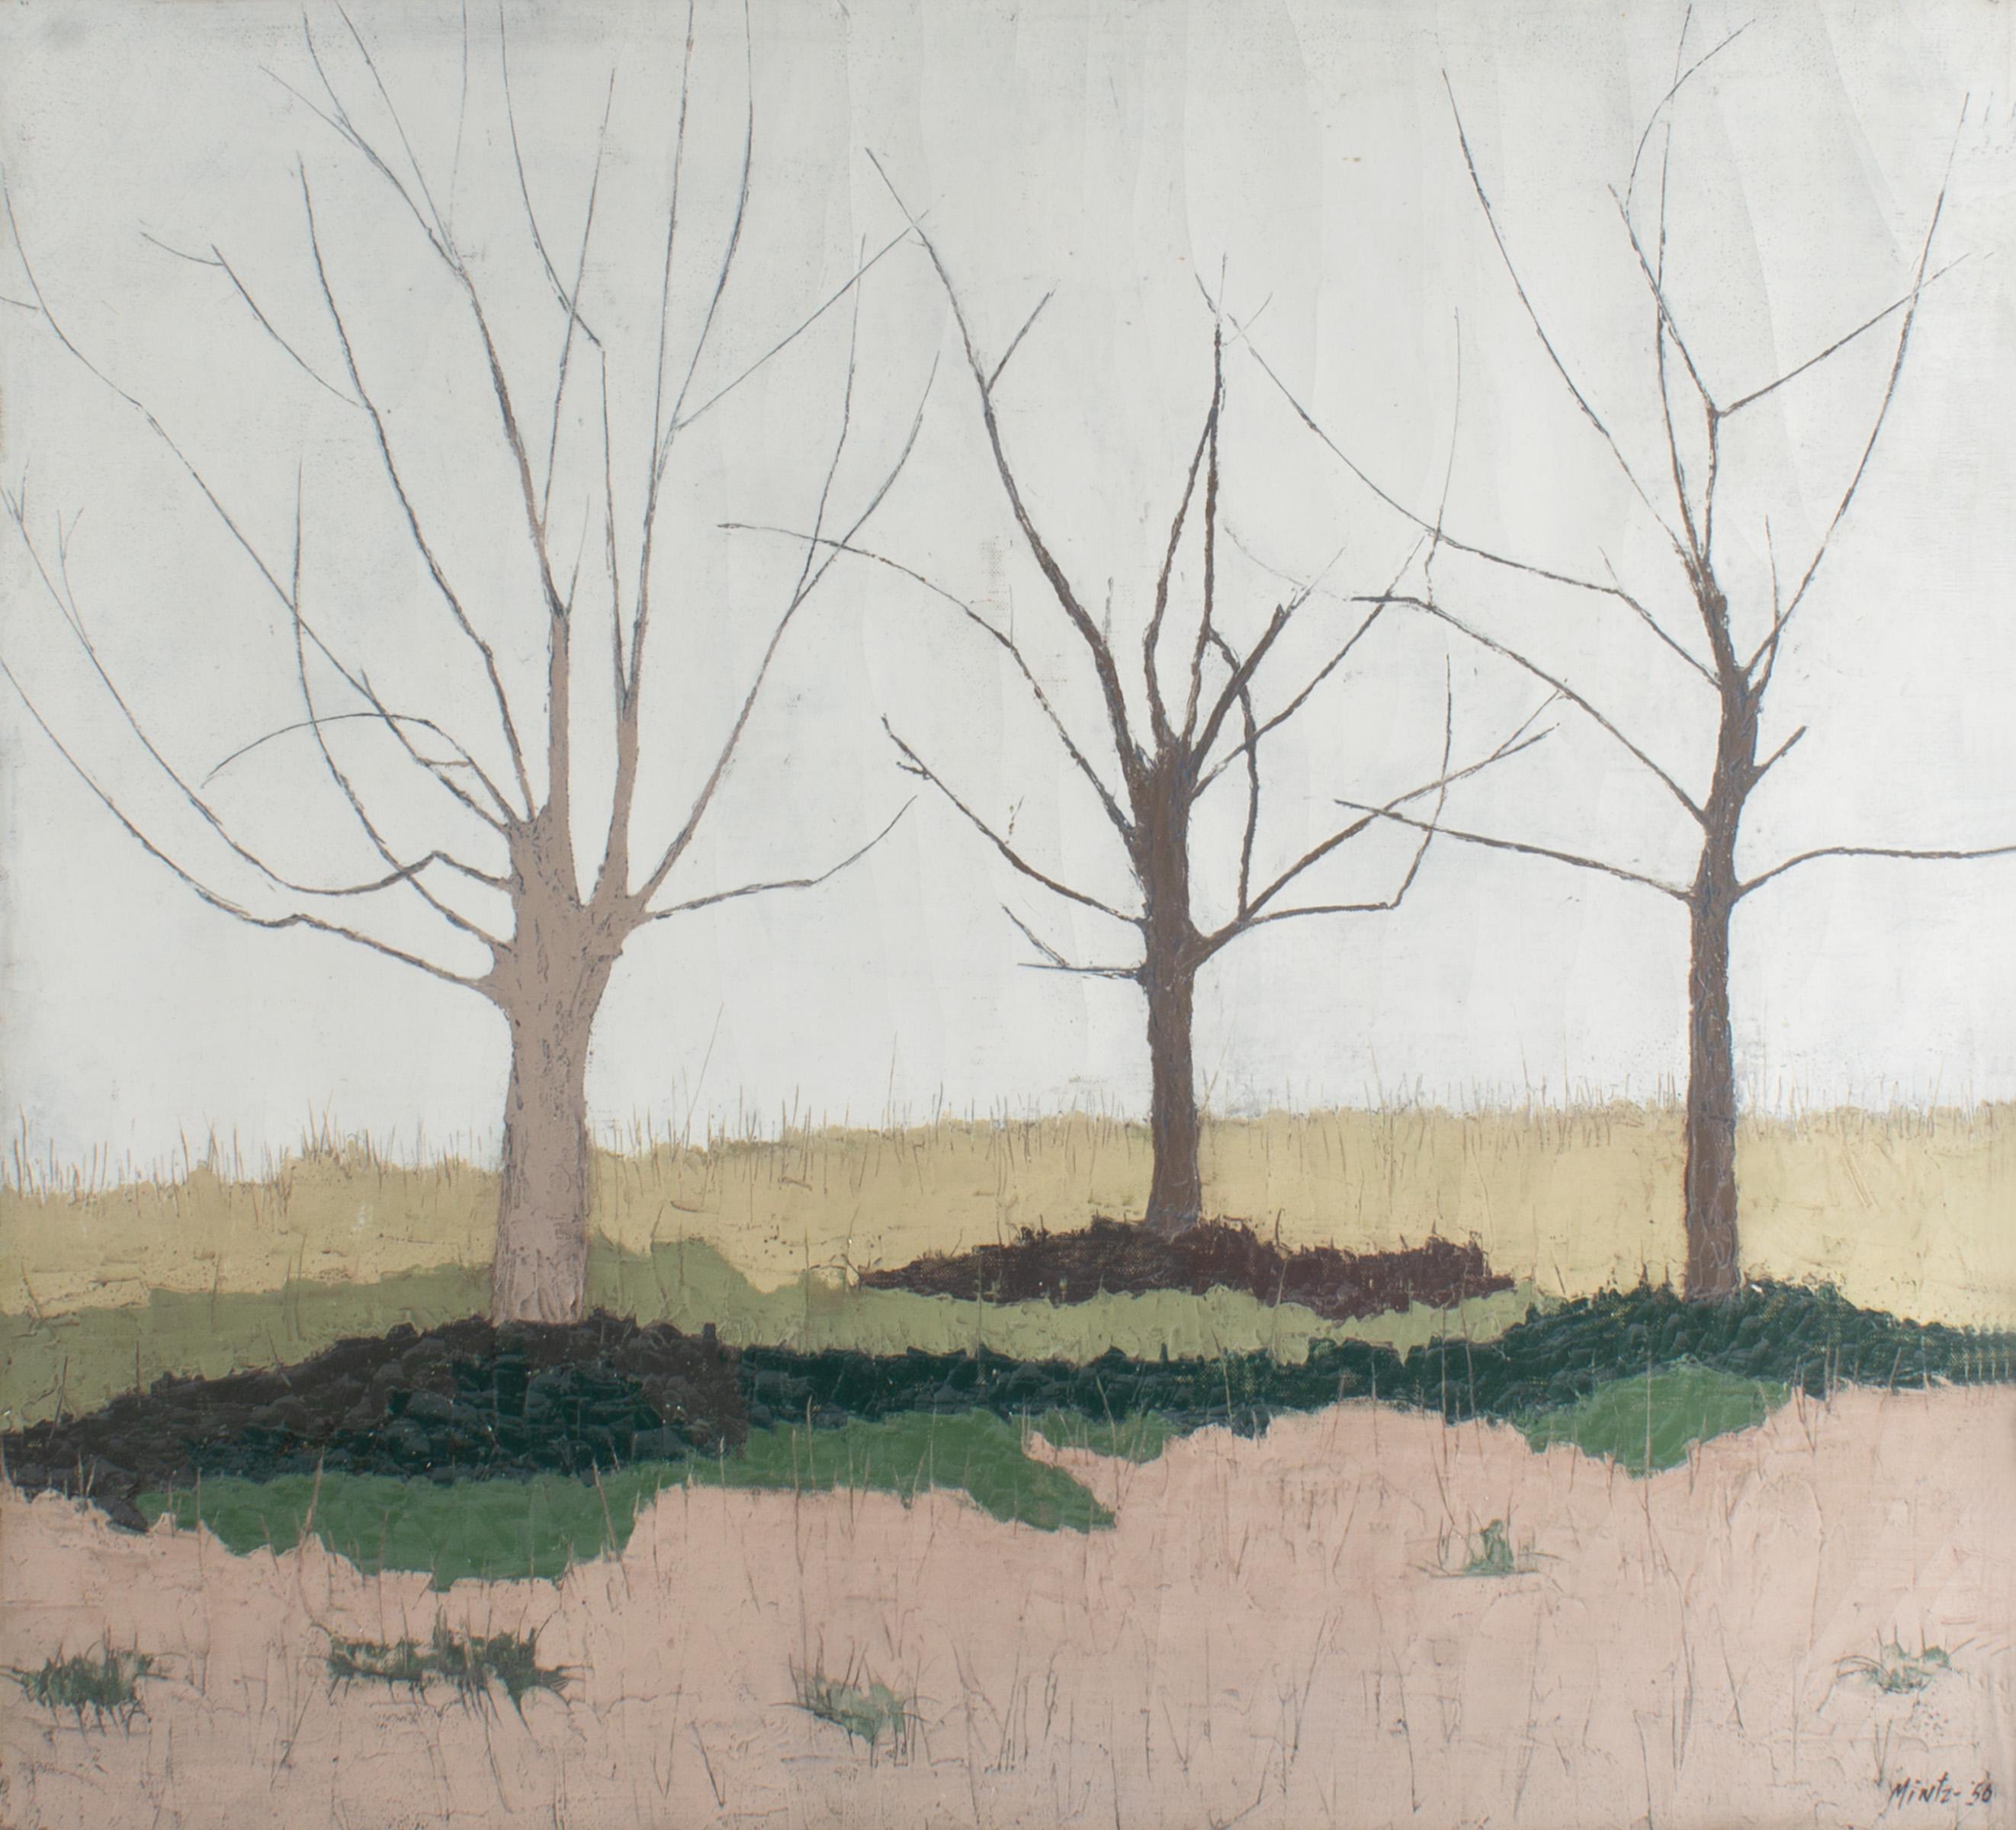 Une peinture abstraite à l'huile sur toile de 1956 représentant un paysage par l'artiste américain Raymond Mintz (1925-2008). Présenté dans un cadre en bois, le tableau représente trois arbres épars sur une parcelle de terrain. Les arbres s'élèvent